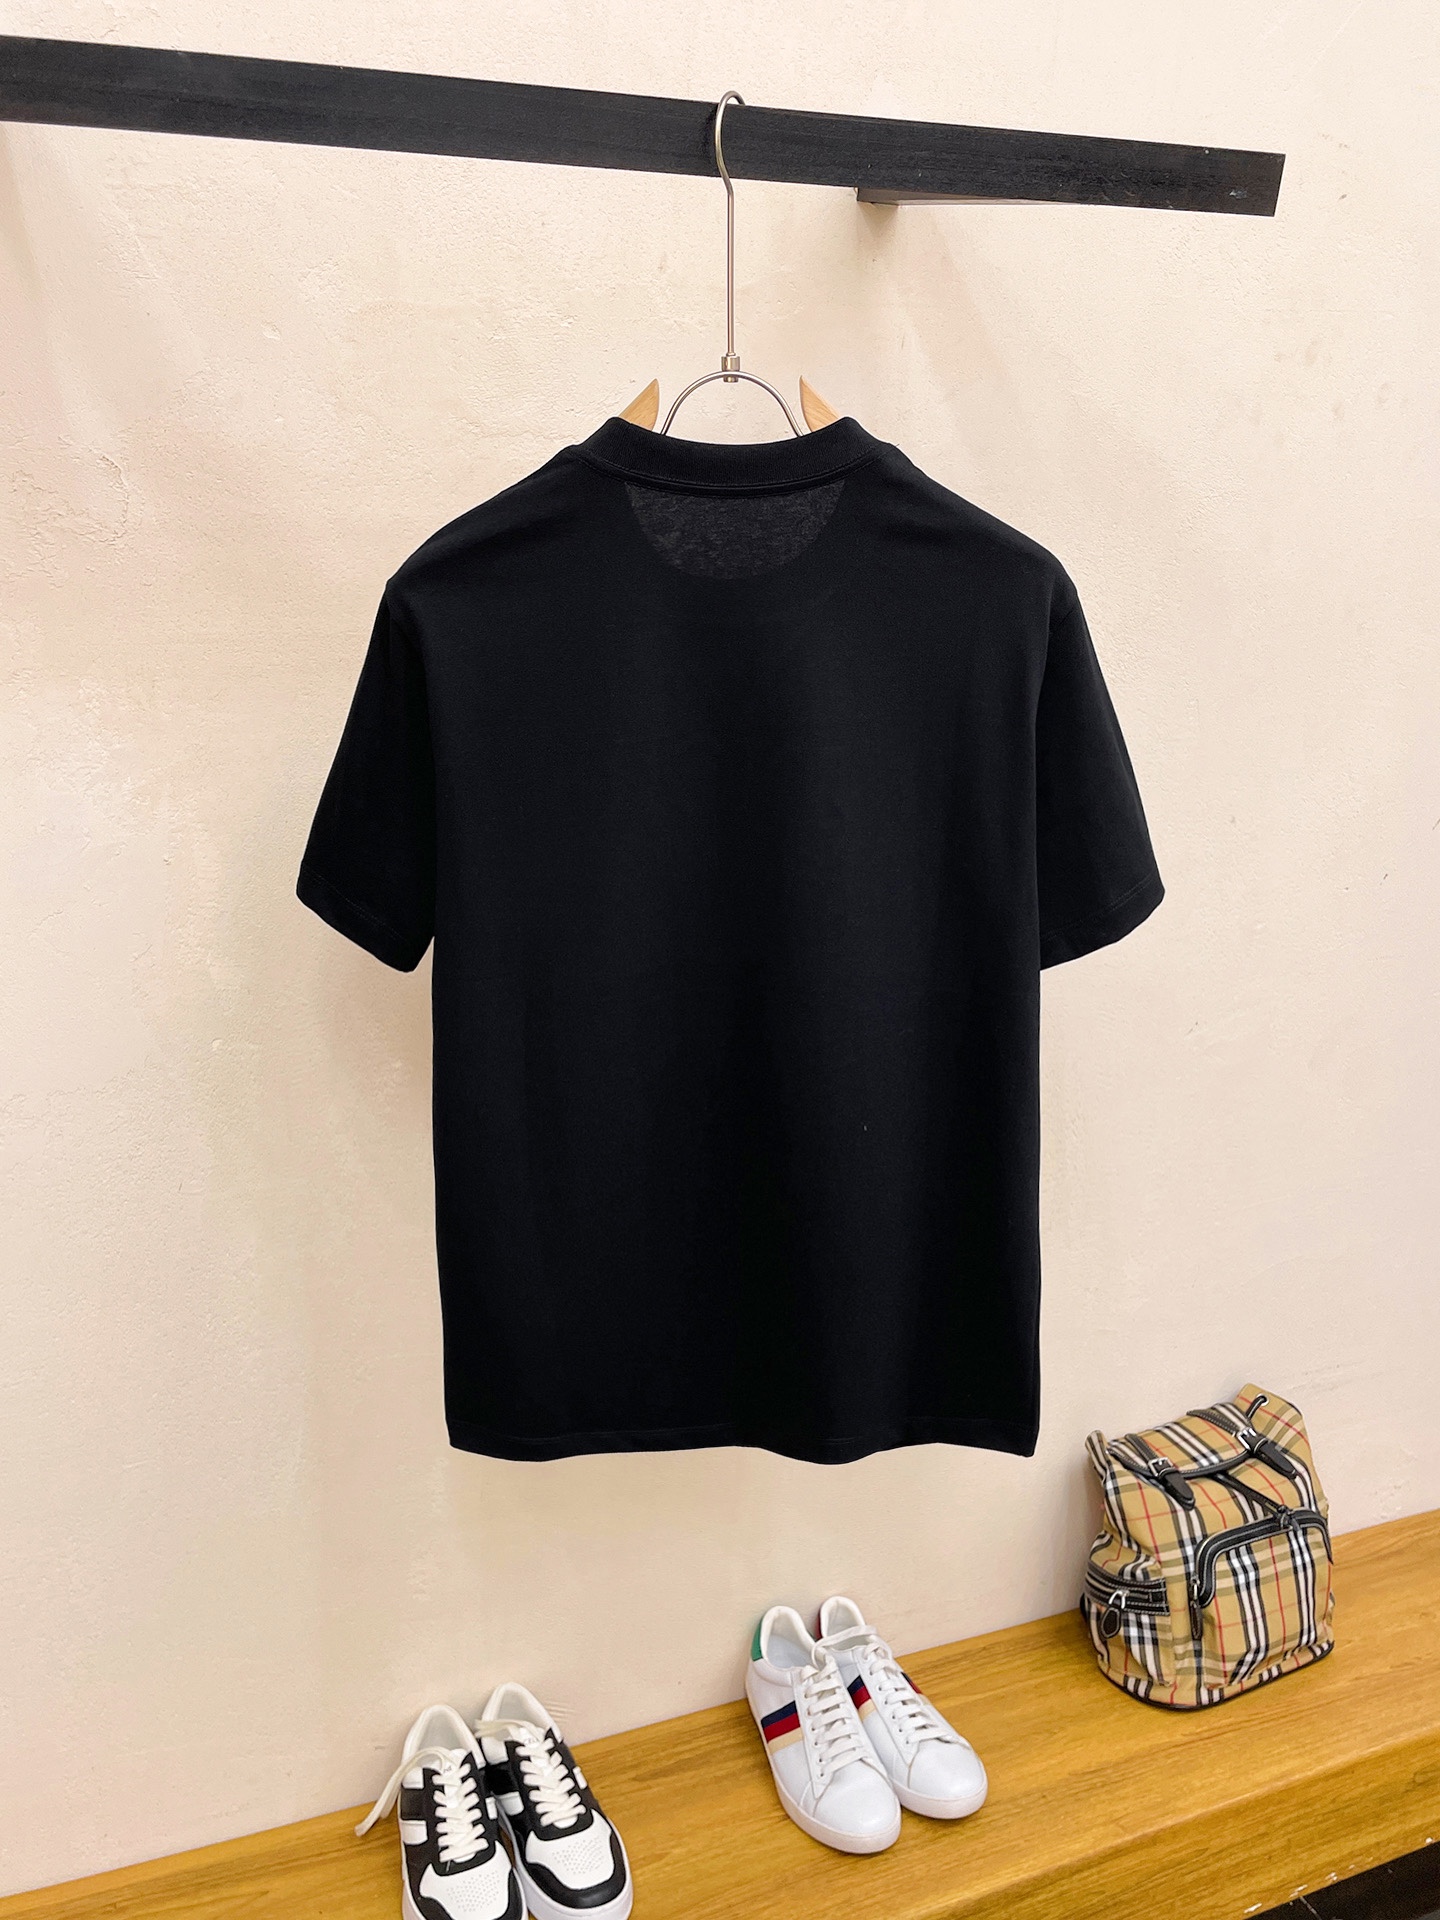 夏 新作登場 ロエベに似たブランドコピー 純綿 トップス シンプル 柔らかい ファッション 短袖 Tシャツ ブラック_2